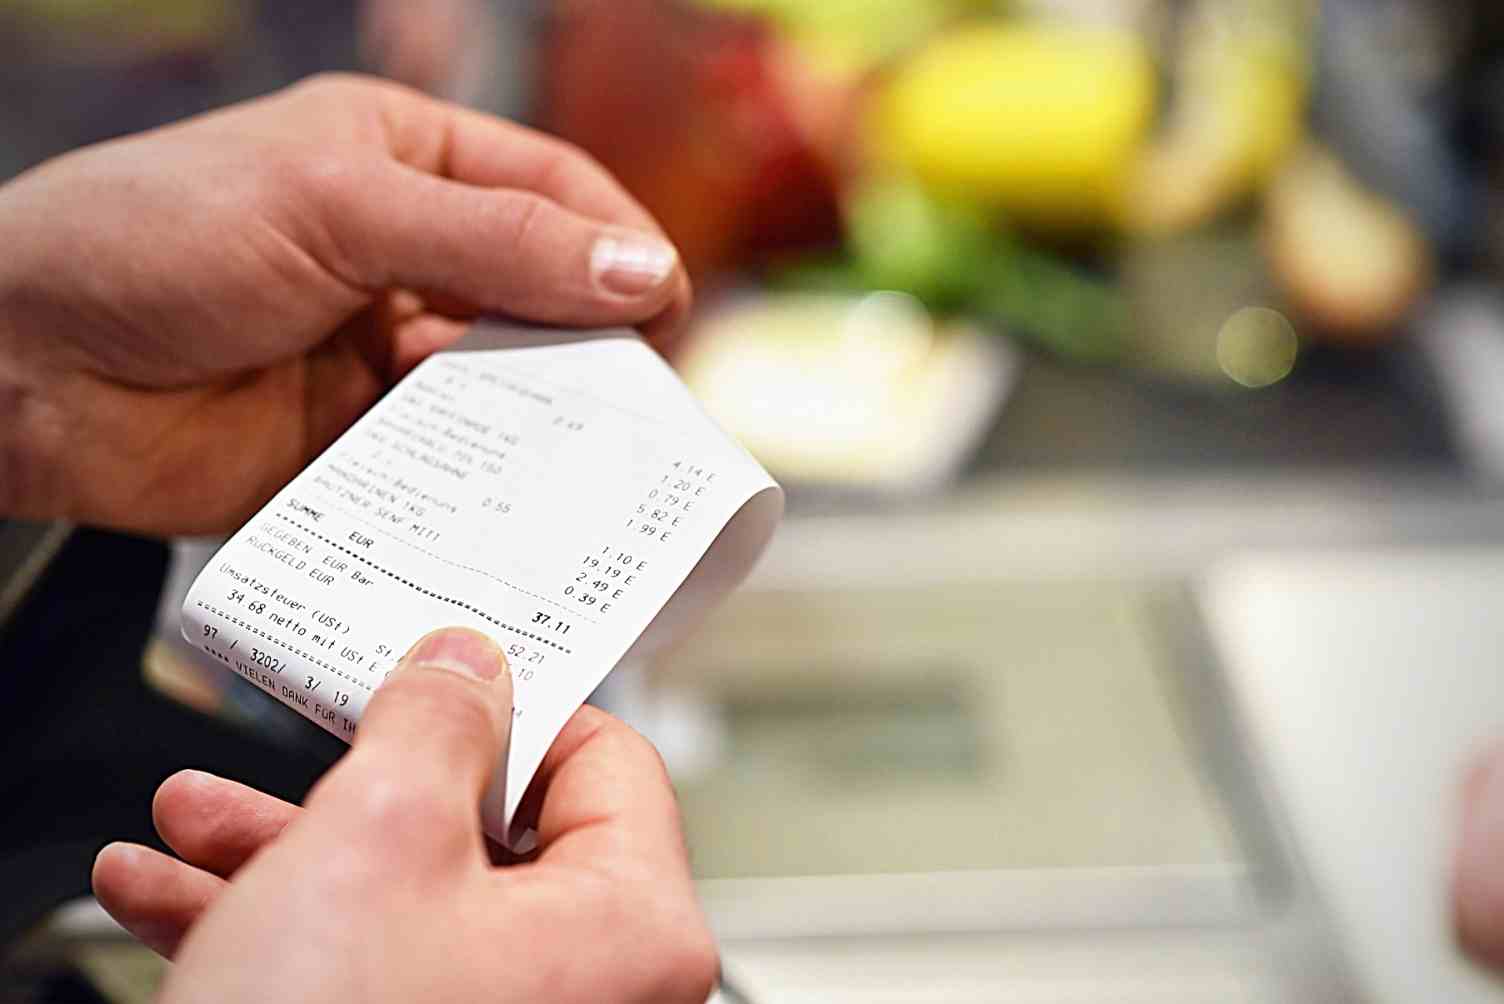 foco nas mãos de uma pessoa que está segurando uma nota fiscal de supermercado, o caixa e alguns produtos aparecem desfocados em segundo plano